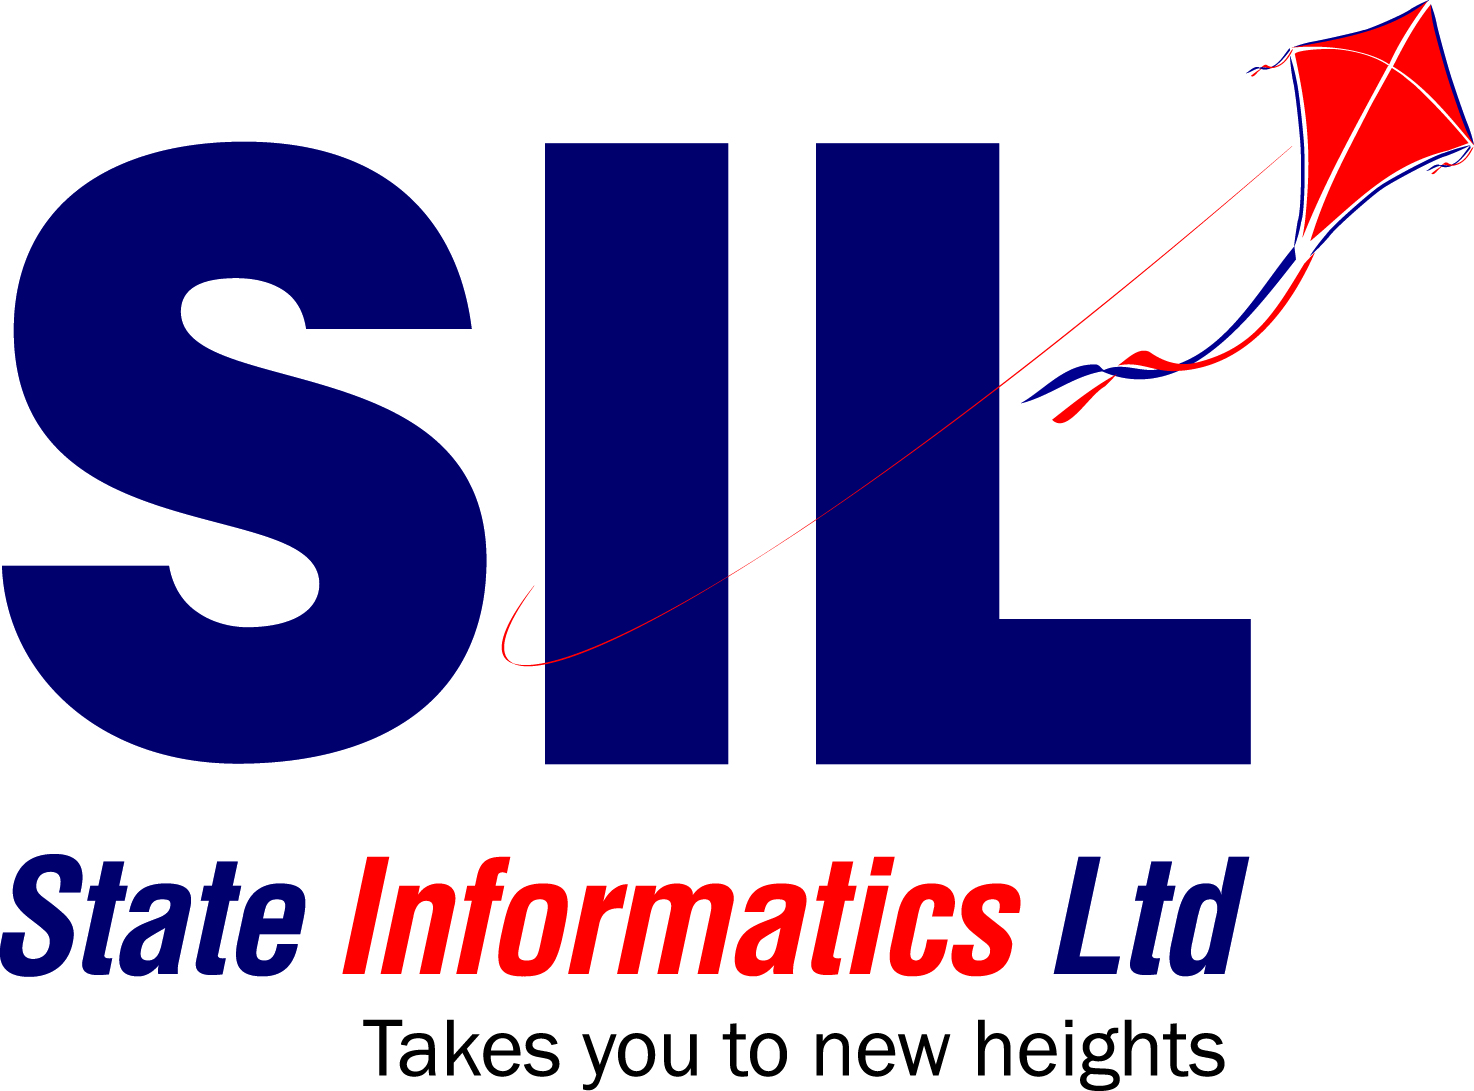 State Informatics Ltd.(SIL)